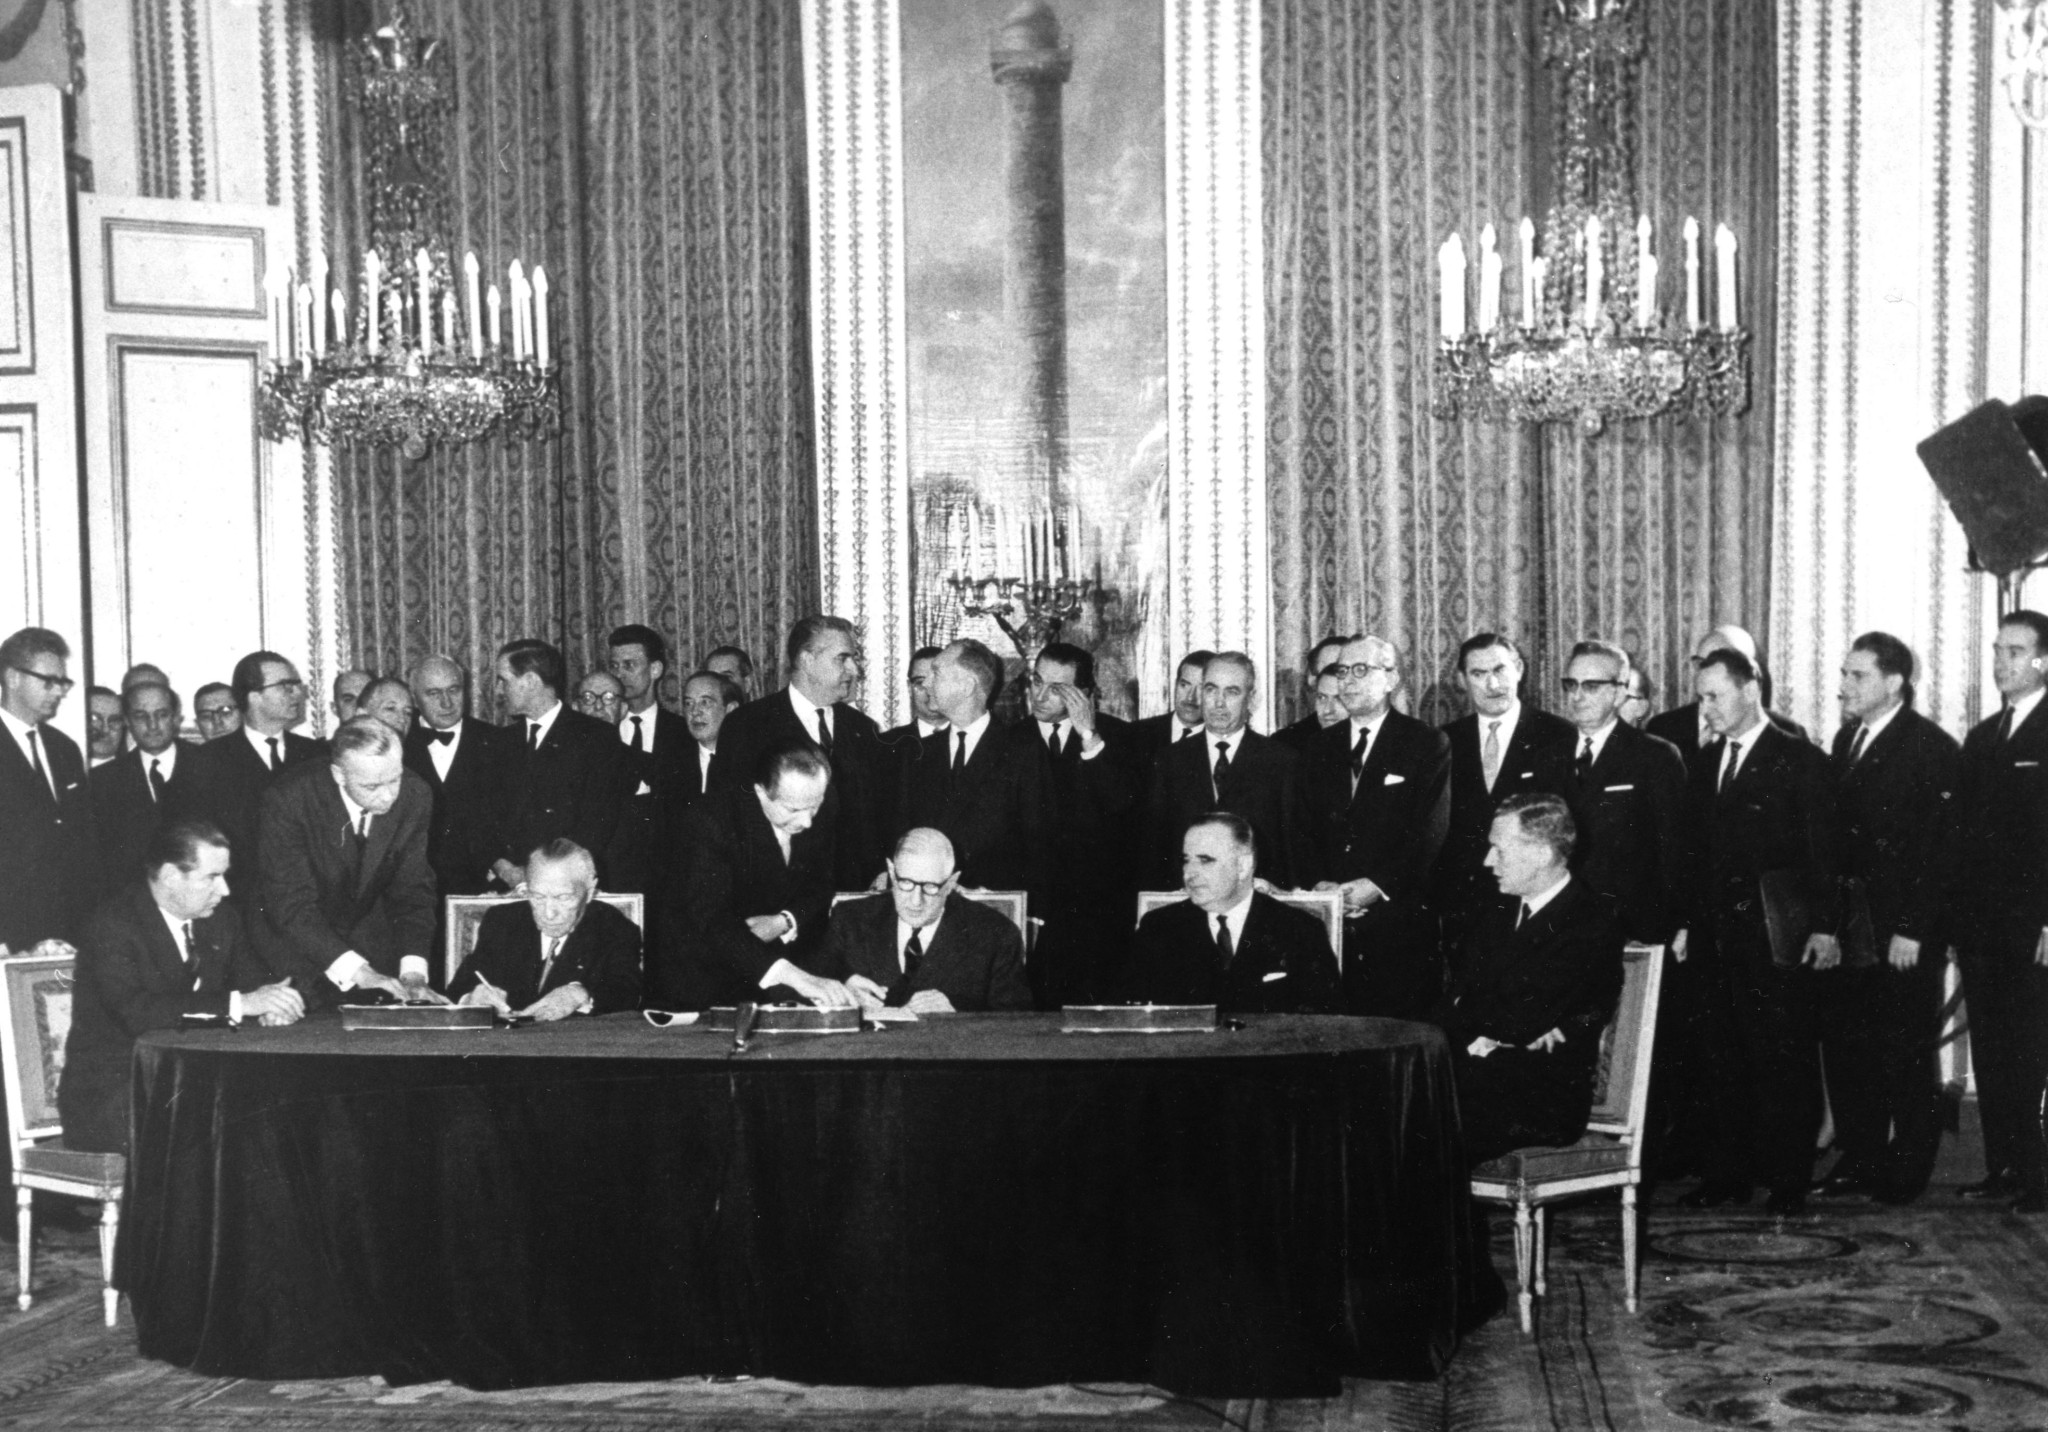 DW: Γαλλία και Γερμανία γιορτάζουν πανηγυρικά στο Παρίσι τα 60 χρόνια της Συνθήκης των Ηλυσίων